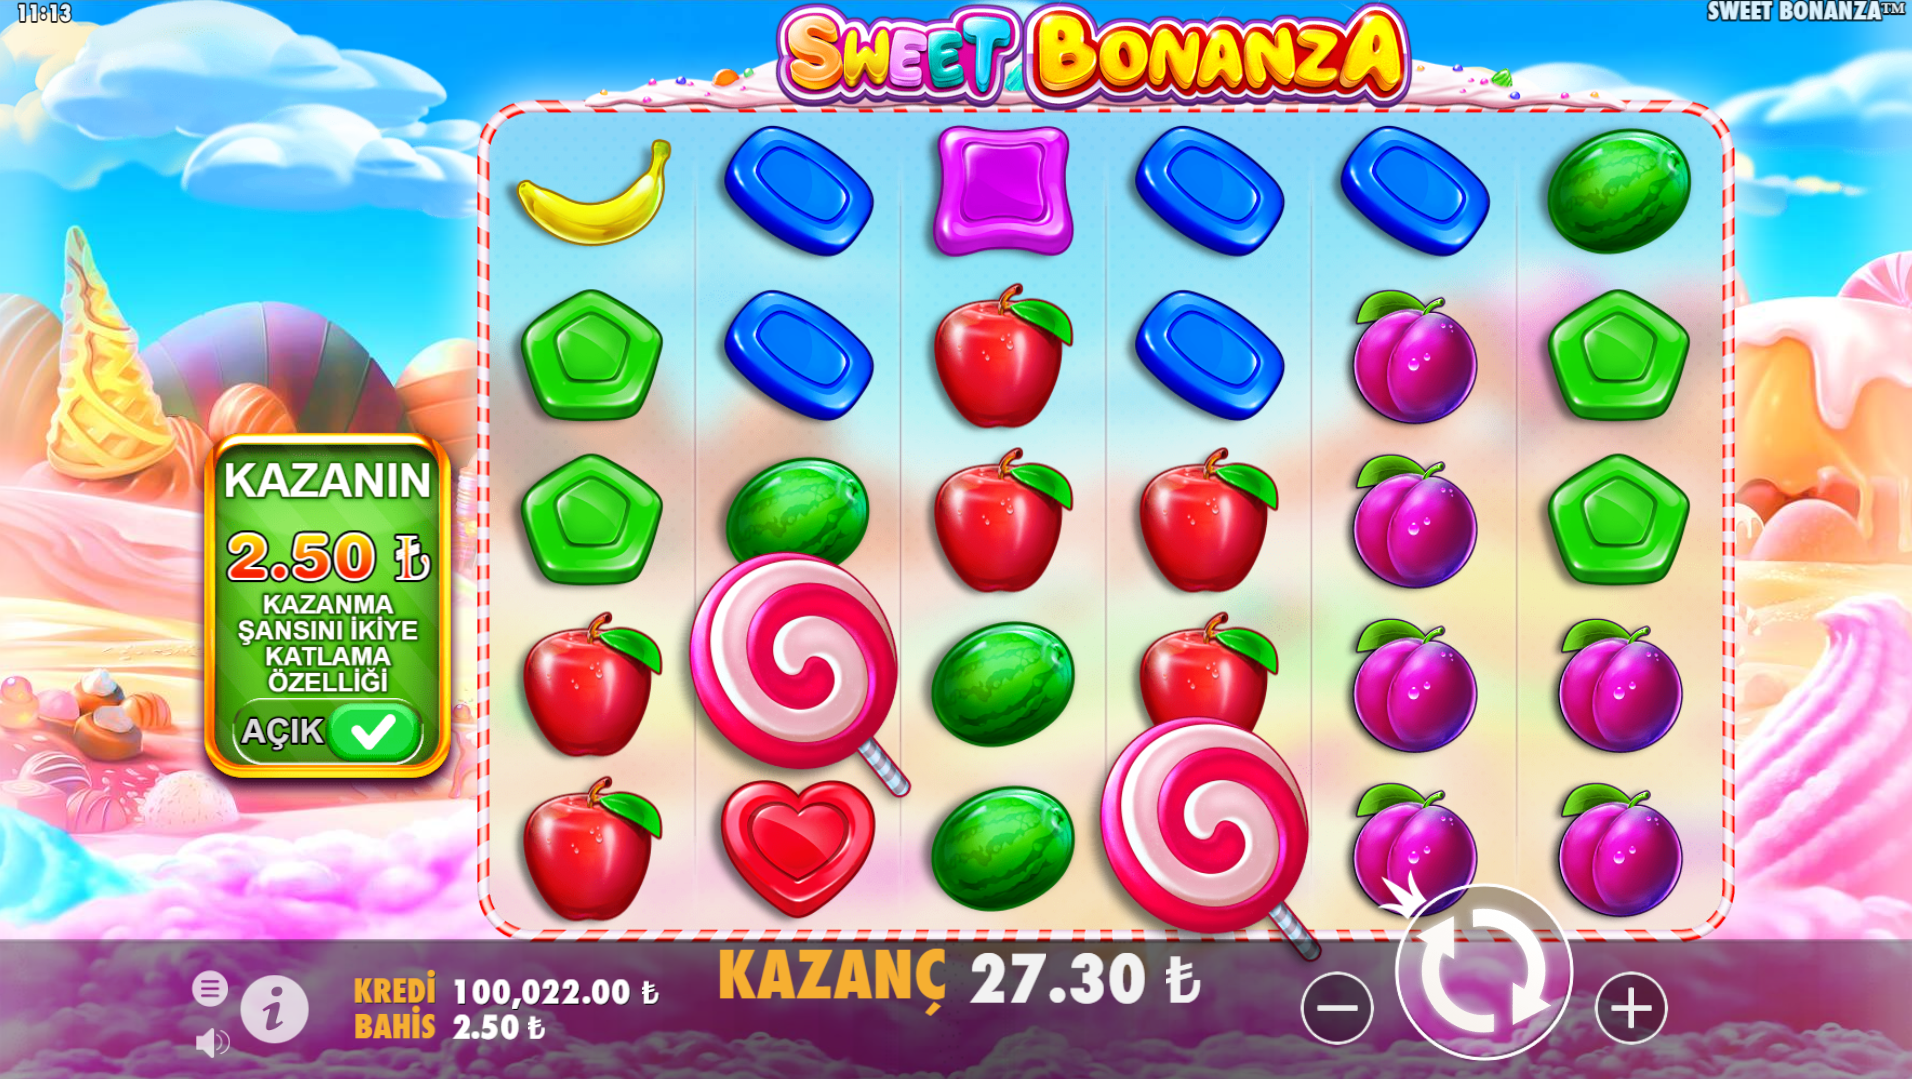 Sweet Bonanza Oyununa Başlamadan Önce Gereken Adımlar